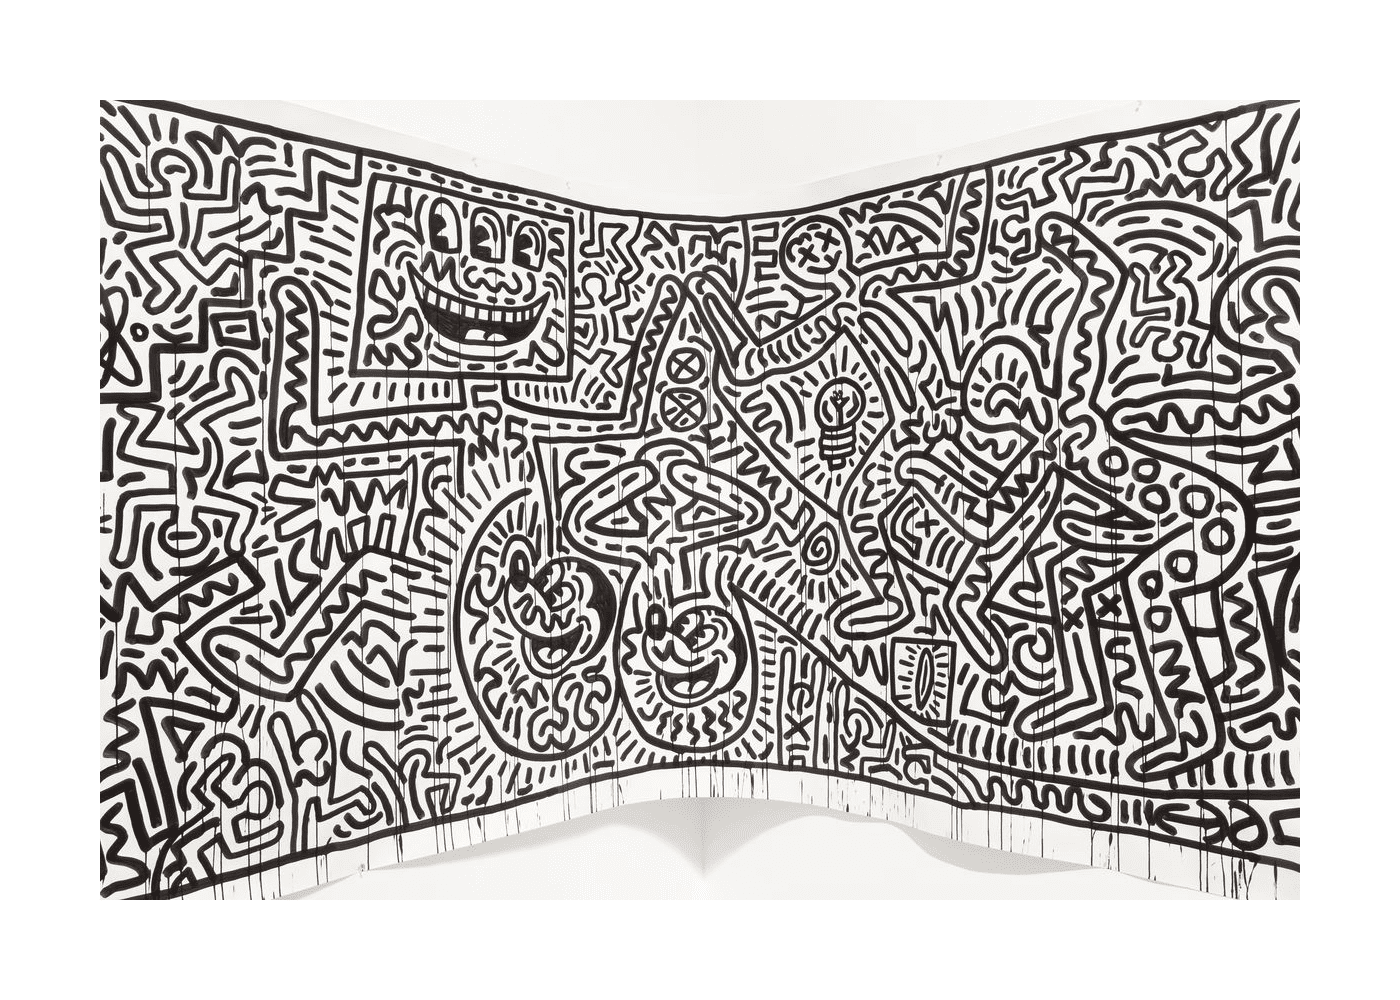  un affresco di Keith Haring 